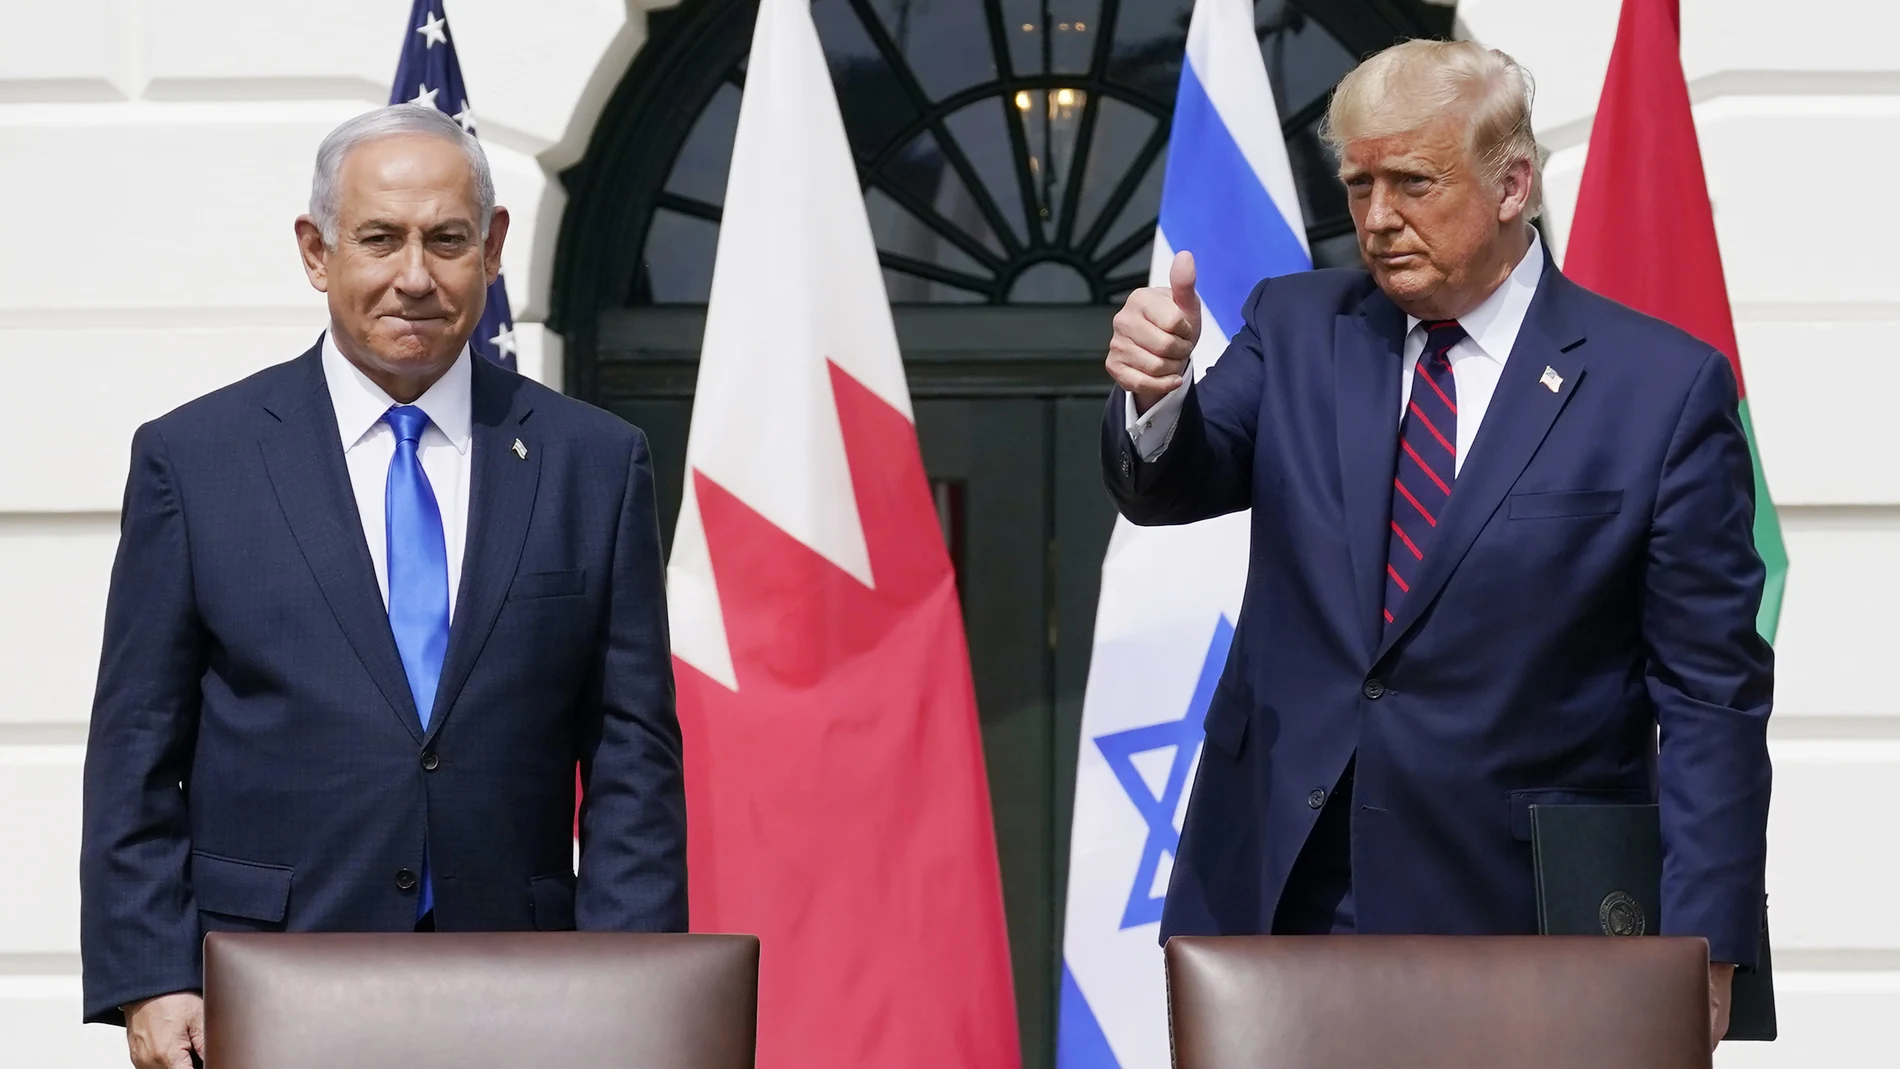 La administración Trump tomó medidas sin precedentes para apoyar a Israel, como la retirada de las objeciones a sus asentamientos en la Cisjordania ocupada y el reconocimiento de Jerusalén